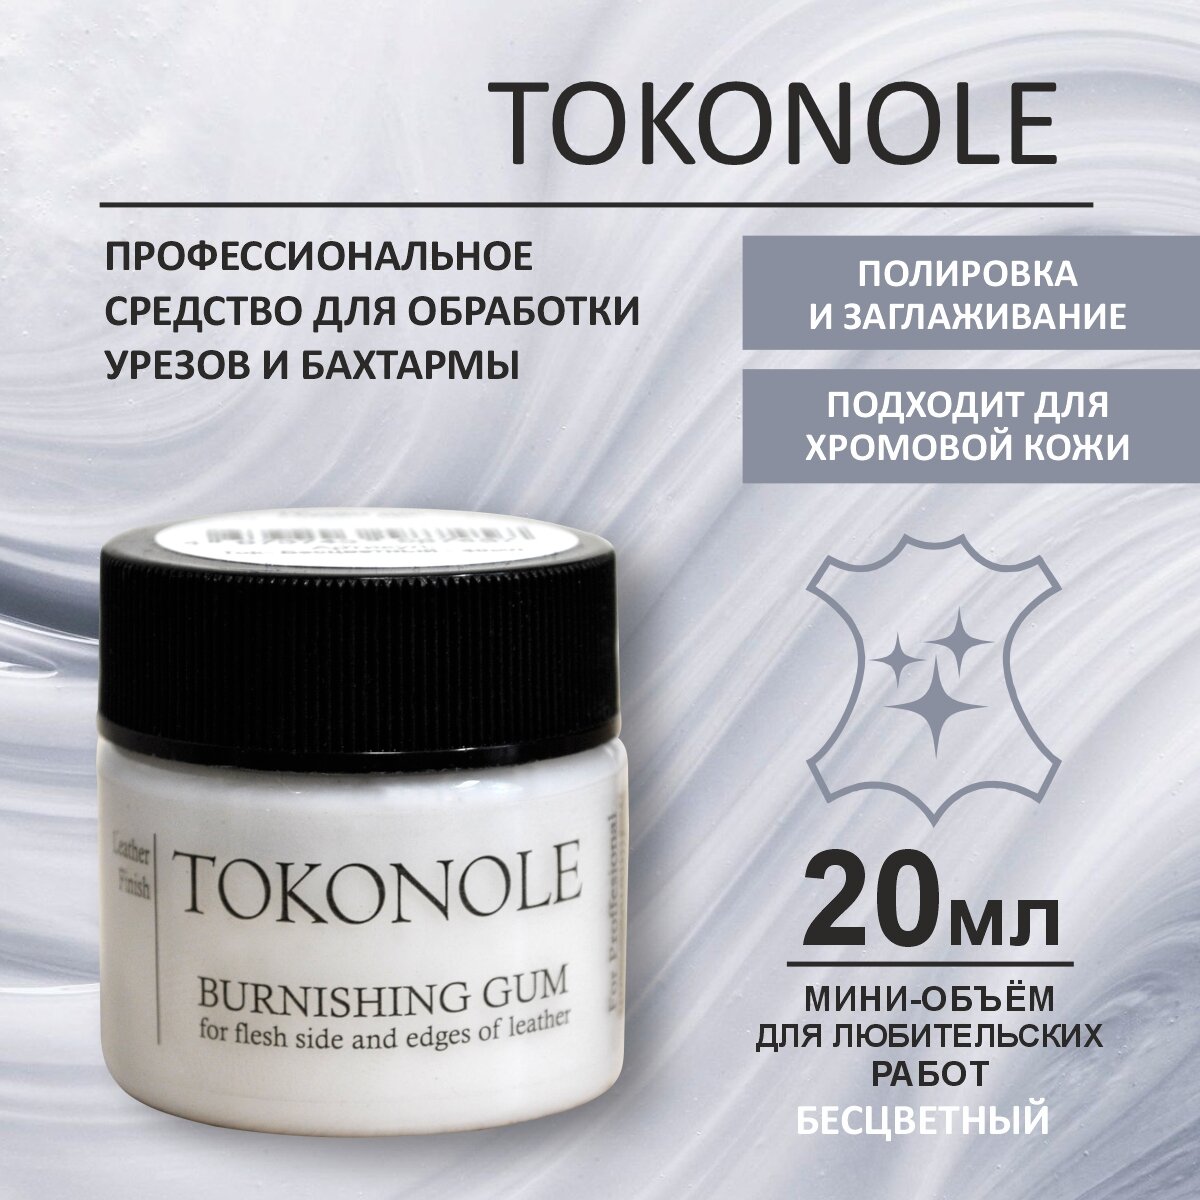 Средство для обработки уреза и бахтармы Токоноле / Tokonole